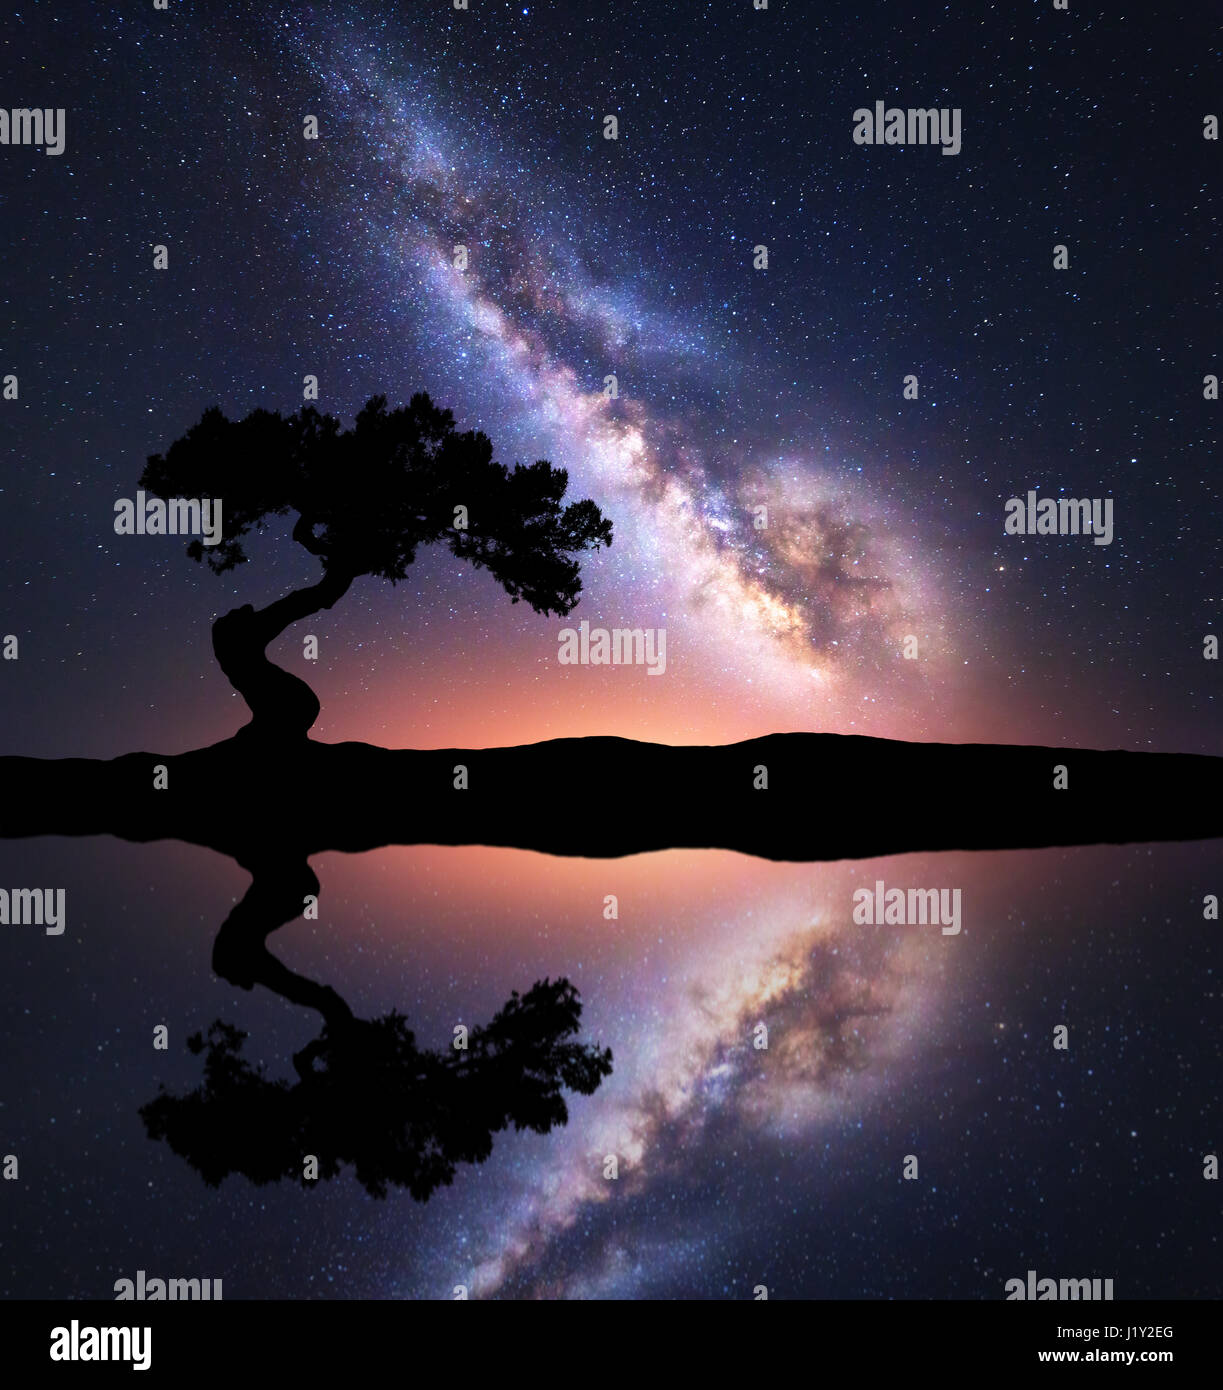 La Via Lattea con albero da sola sulla collina vicino al lago con il cielo riflesso nell'acqua. Colorato paesaggio notturno con via lattea, sky con stelle e stagno Foto Stock